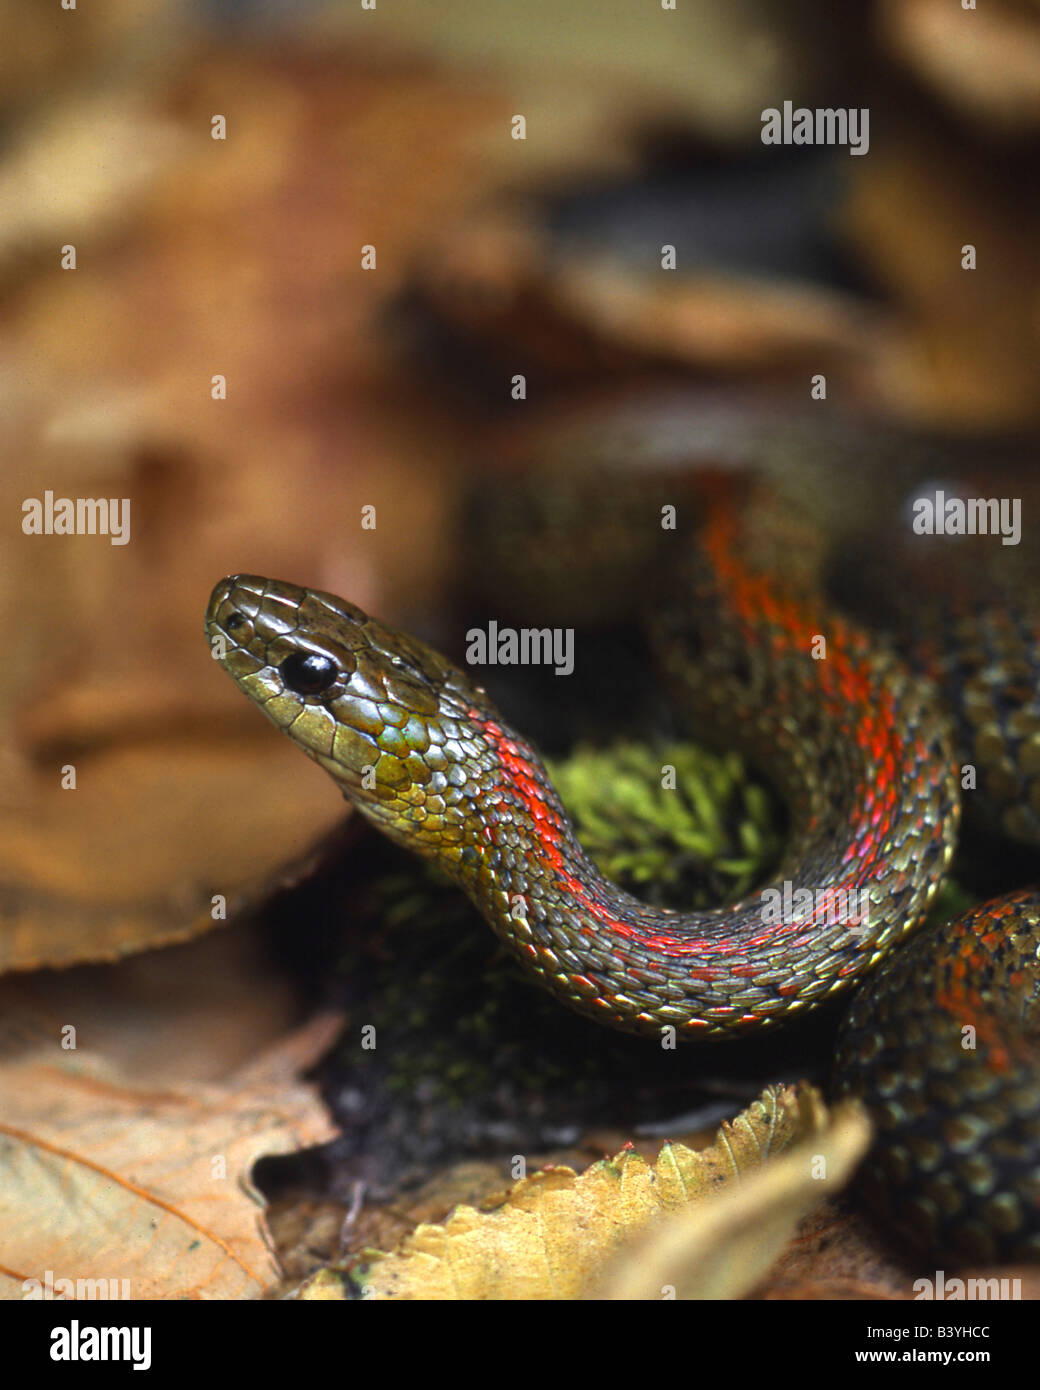 USA, Oregon, Multnomah County. Garter snake in garden. Stock Photo